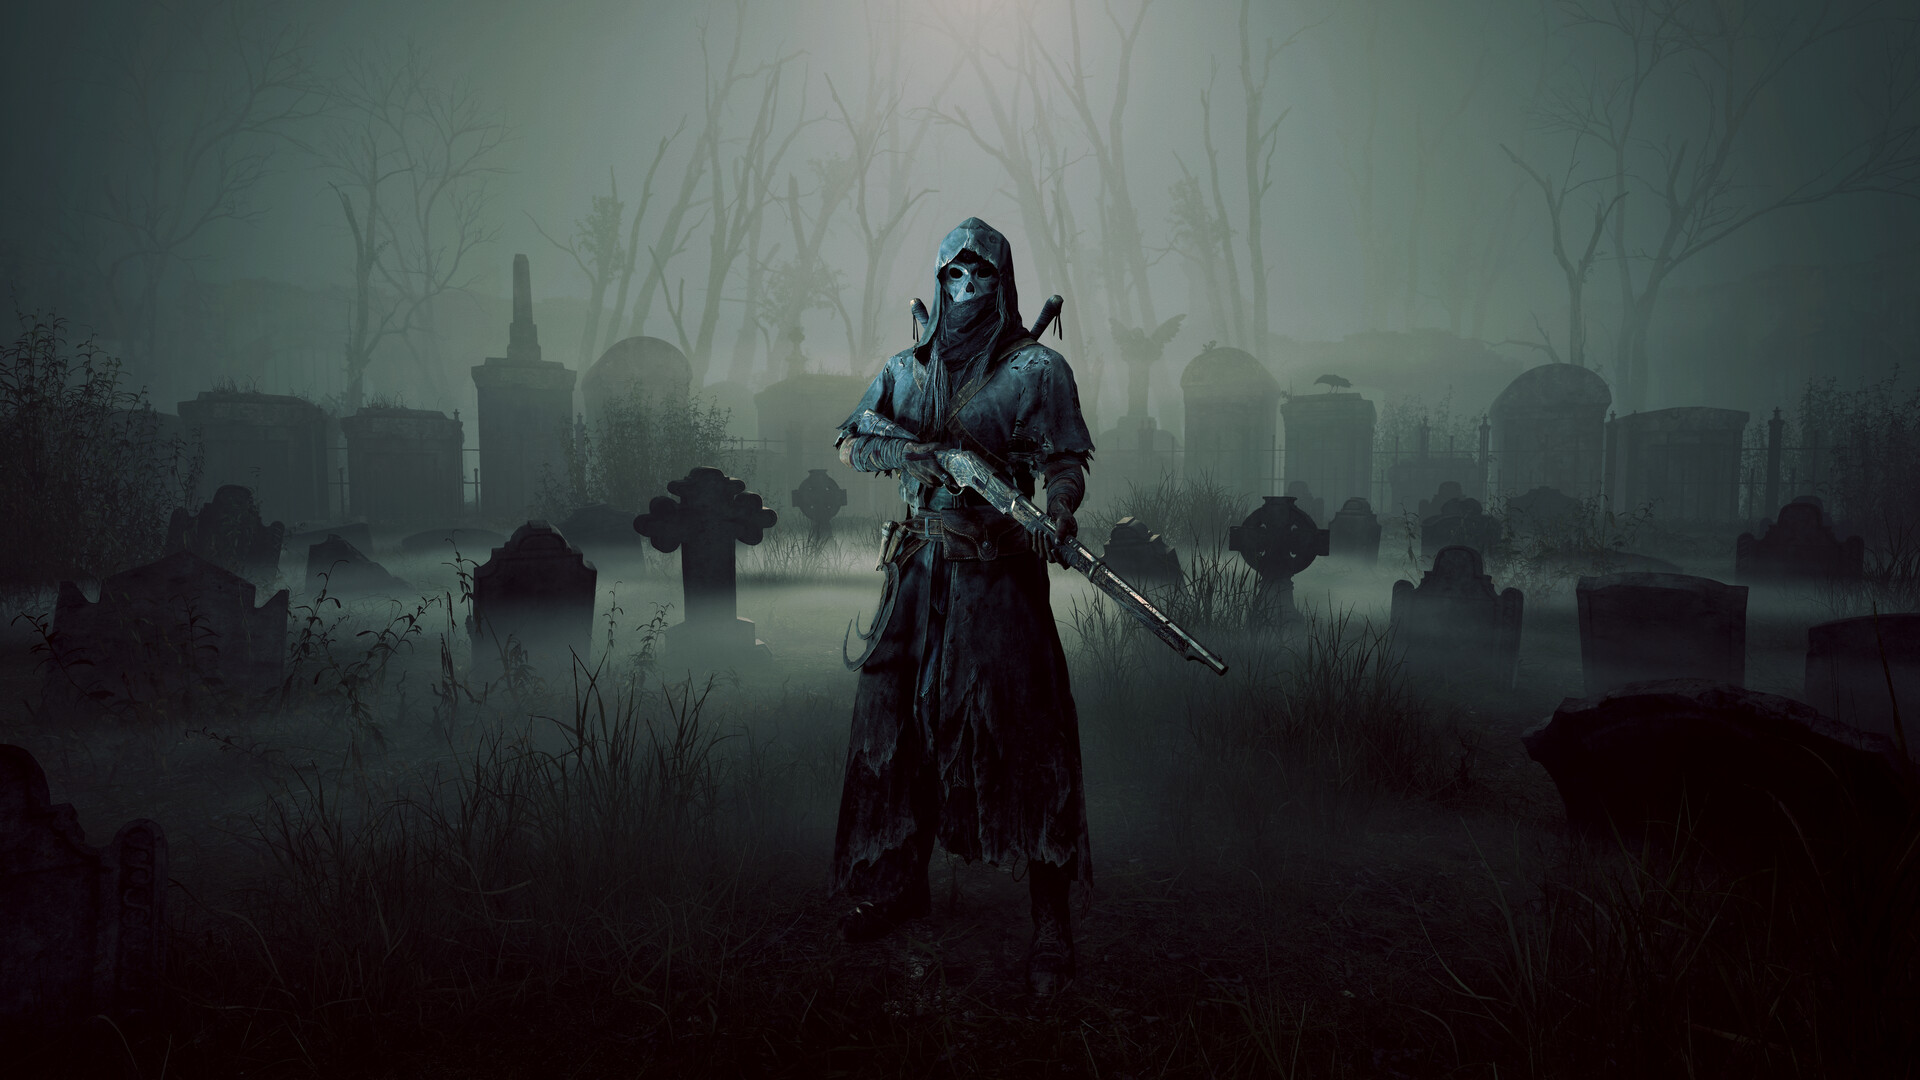 Save 25% on Hunt: Showdown - Shrine Maiden's Hell on Steam